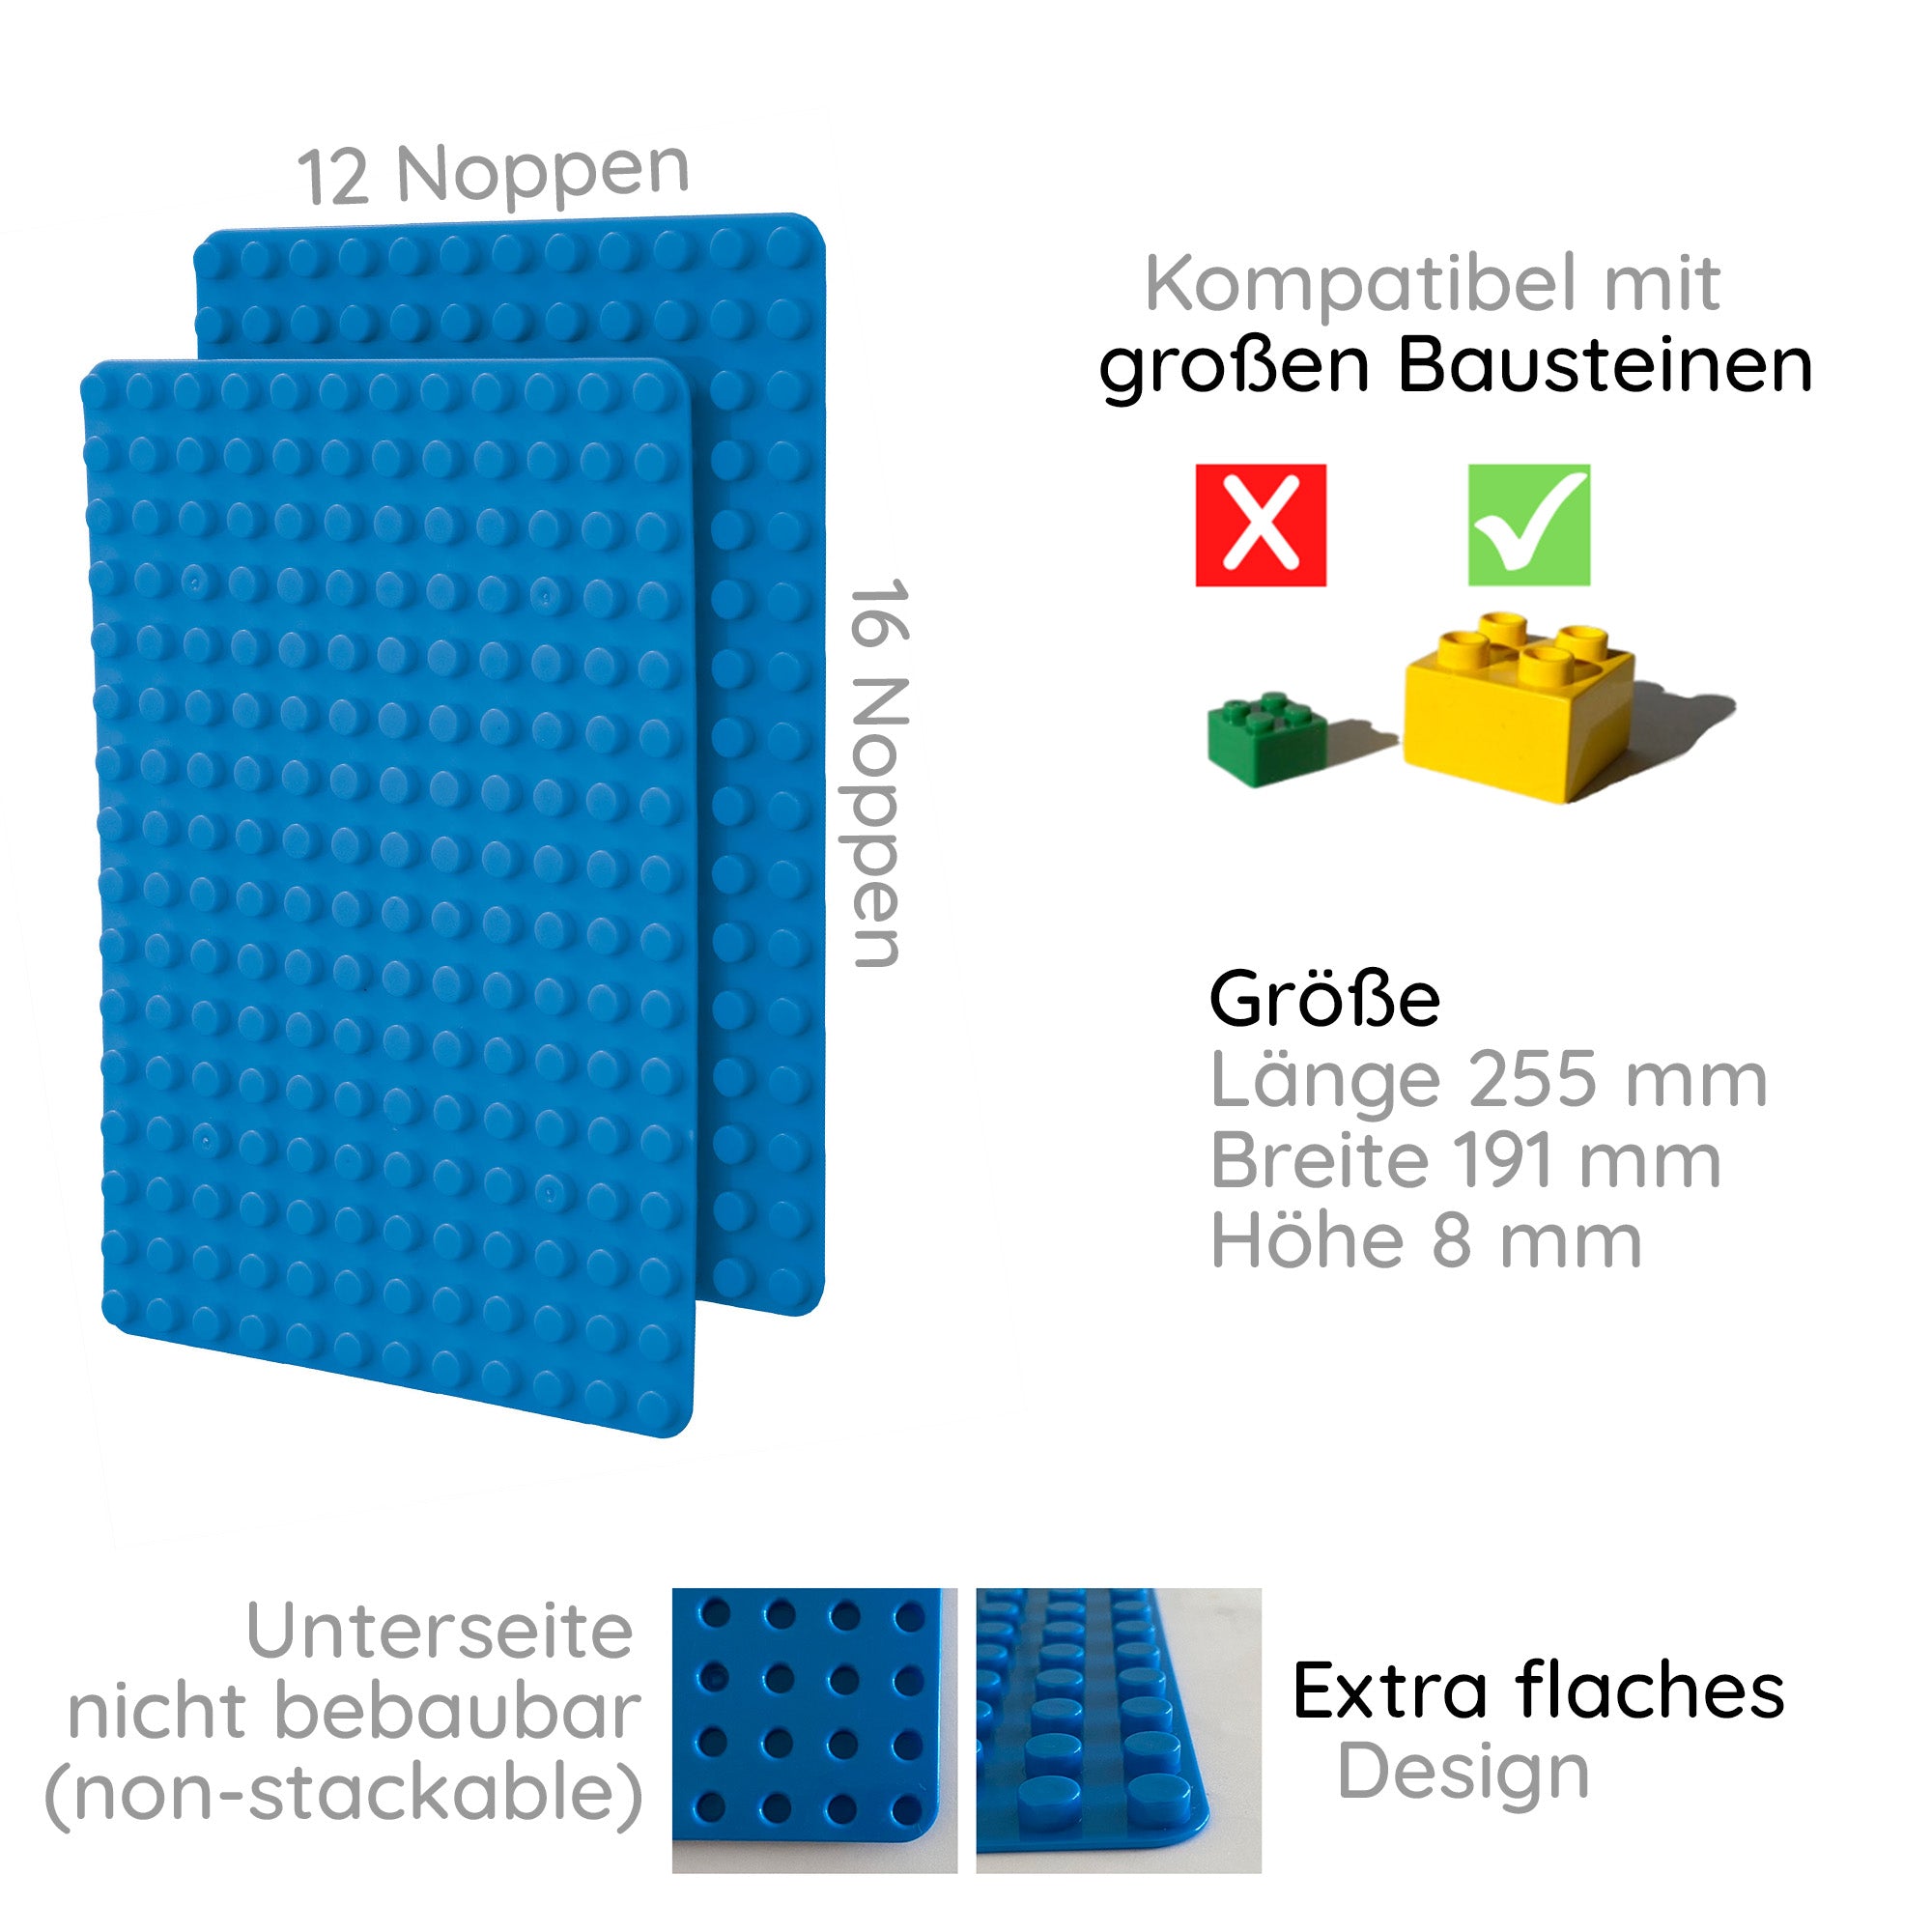 2er Set Bauplatten kompatibel mit z.B. Lego Duplo